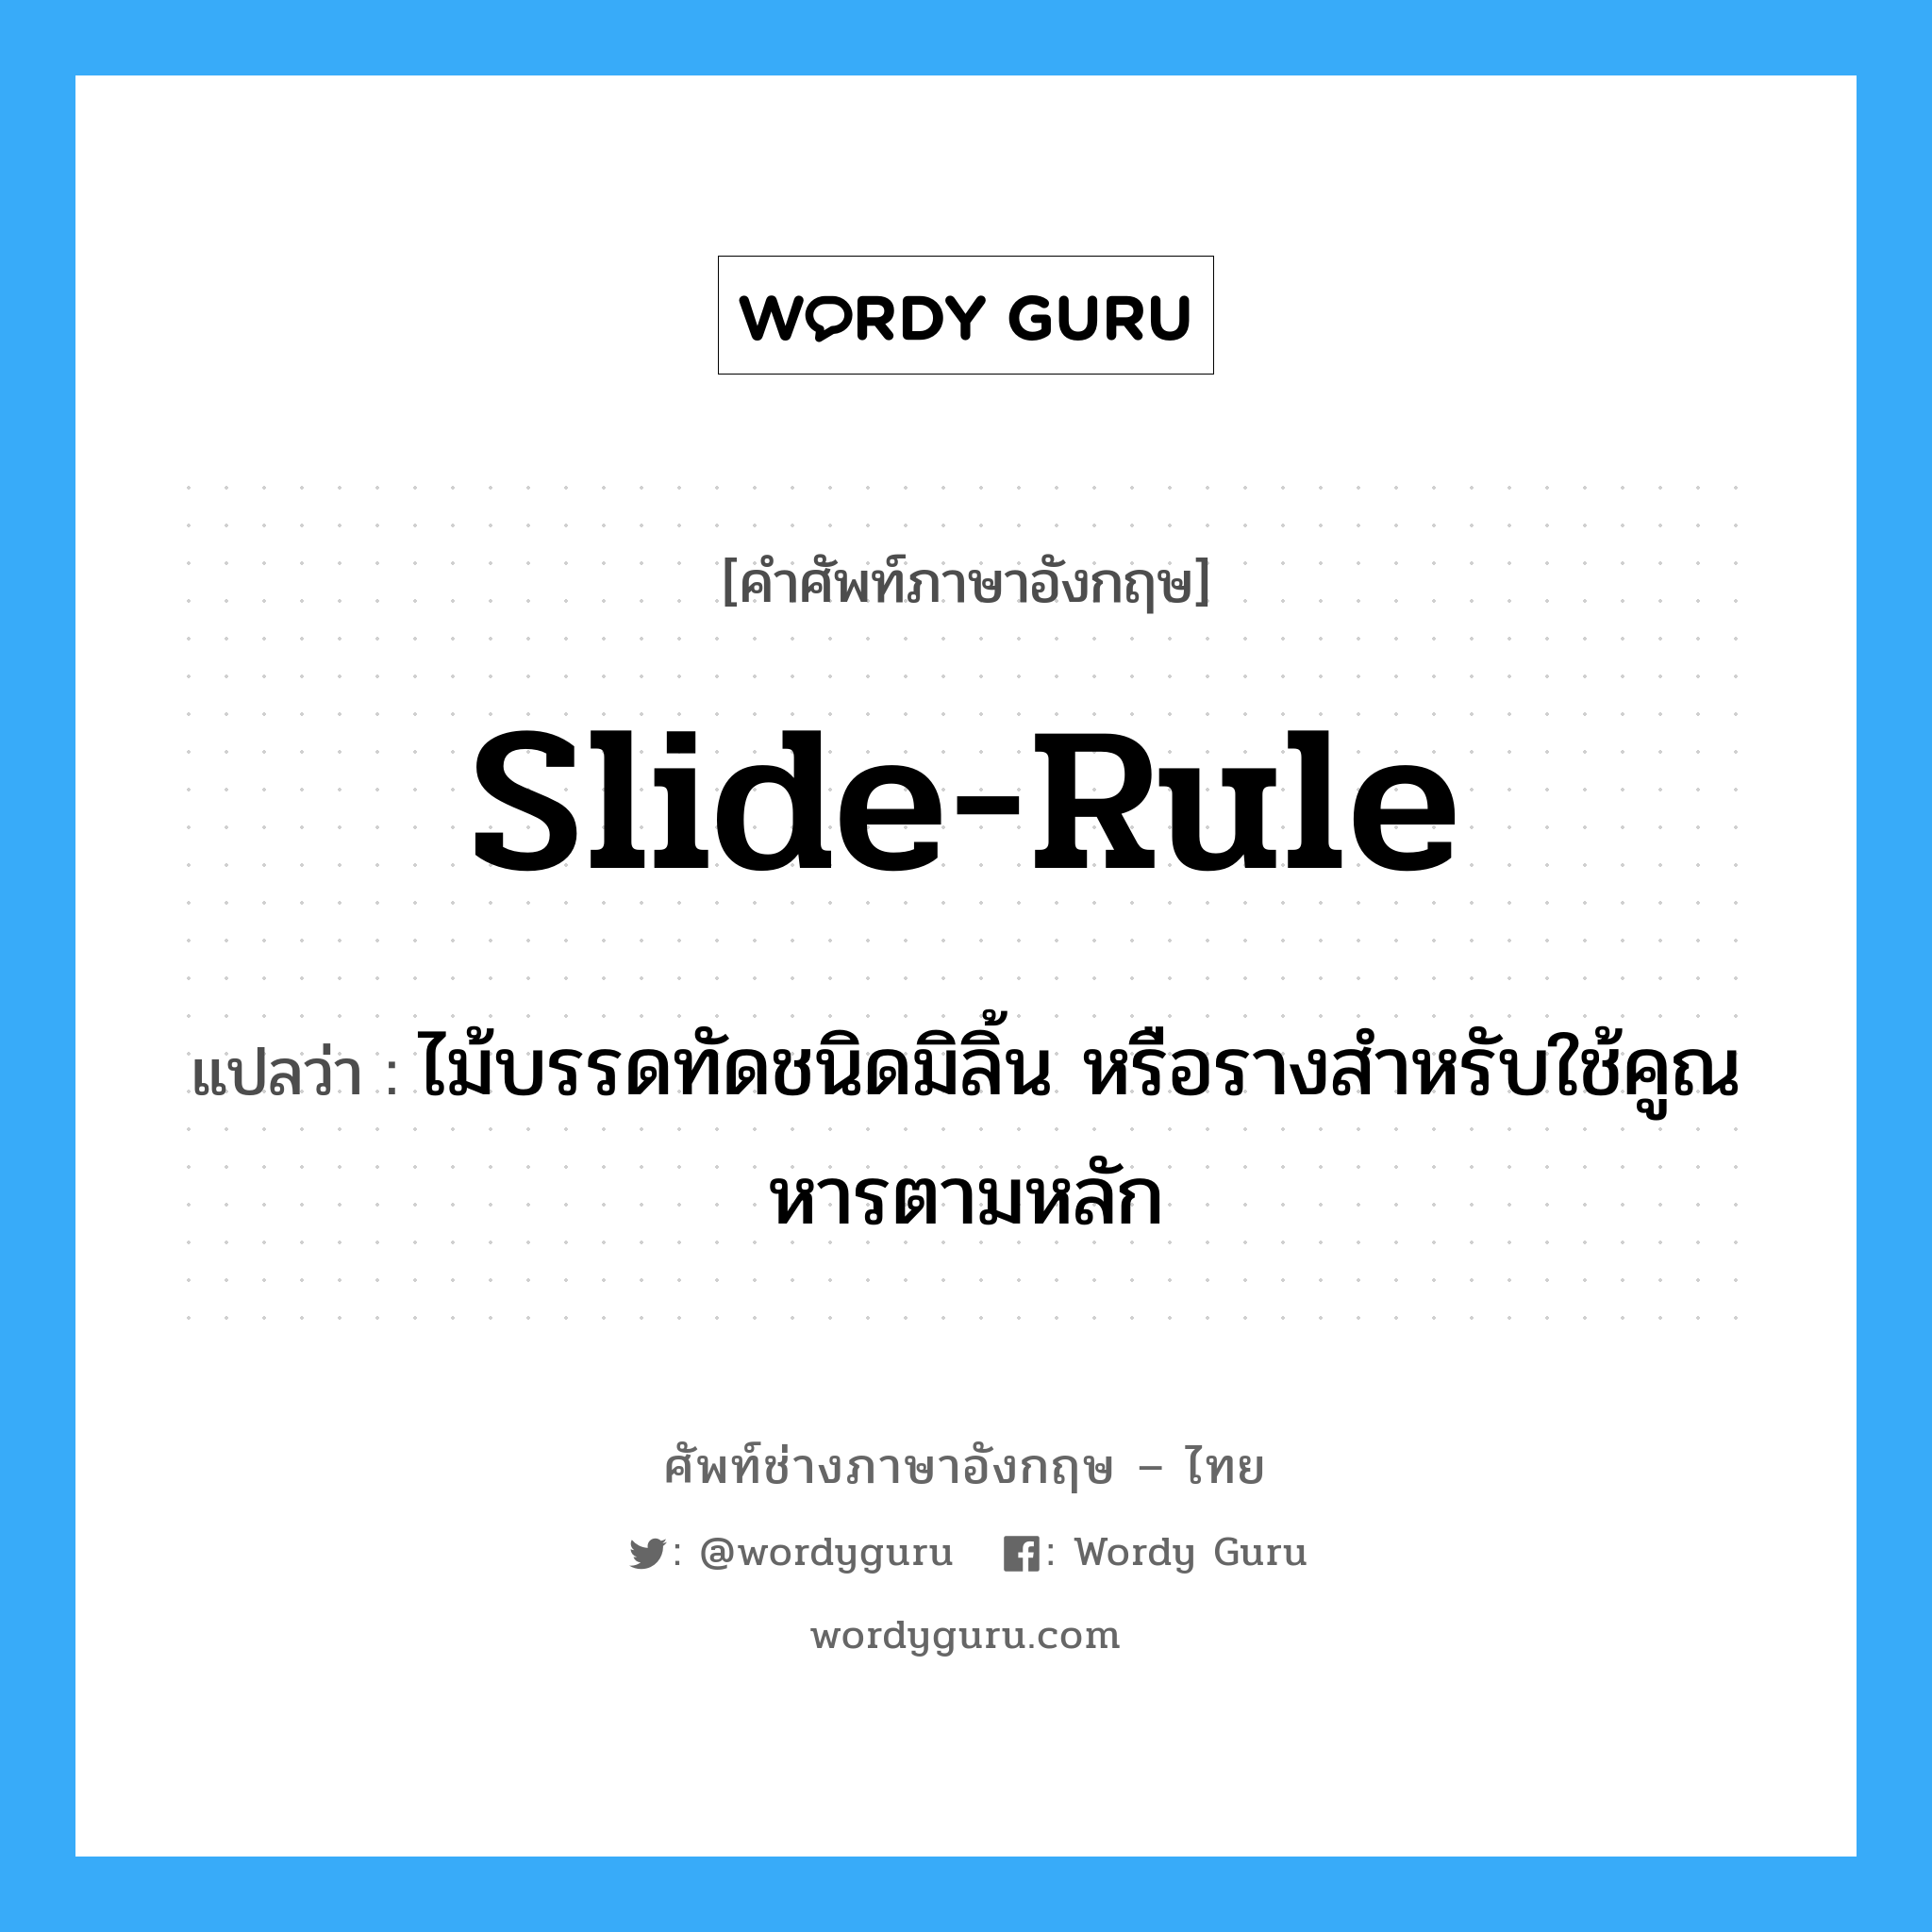 slide-rule แปลว่า?, คำศัพท์ช่างภาษาอังกฤษ - ไทย slide-rule คำศัพท์ภาษาอังกฤษ slide-rule แปลว่า ไม้บรรดทัดชนิดมิลิ้น หรือรางสำหรับใช้คูณหารตามหลัก